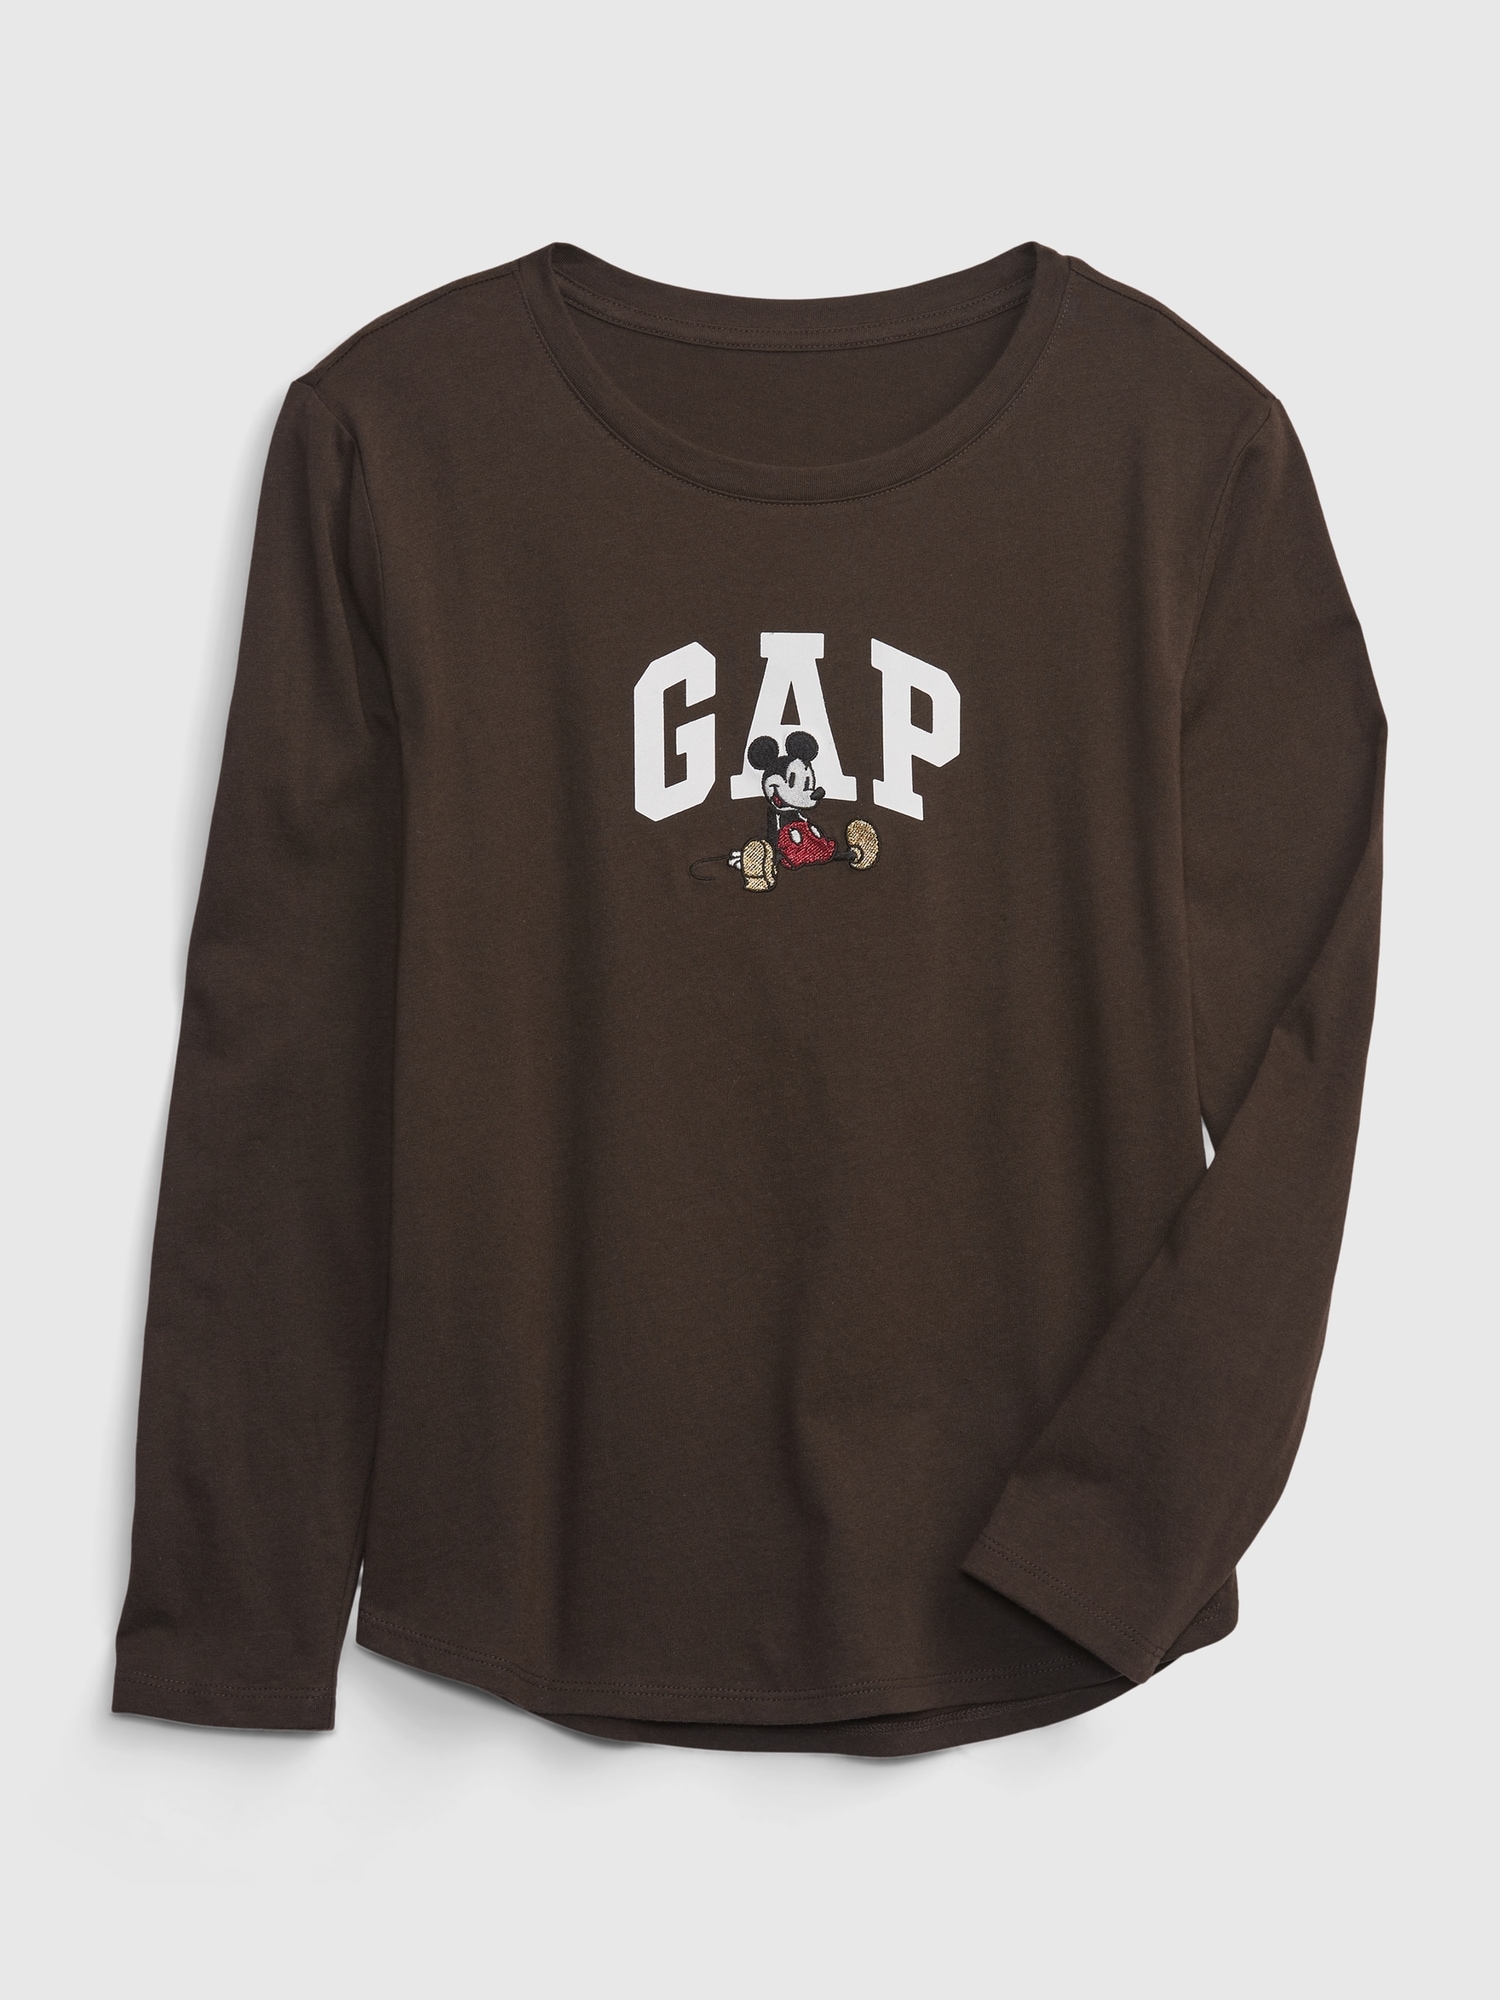 Gap ディズニー オーガニックコットン100% グラフィックtシャツ (キッズ)